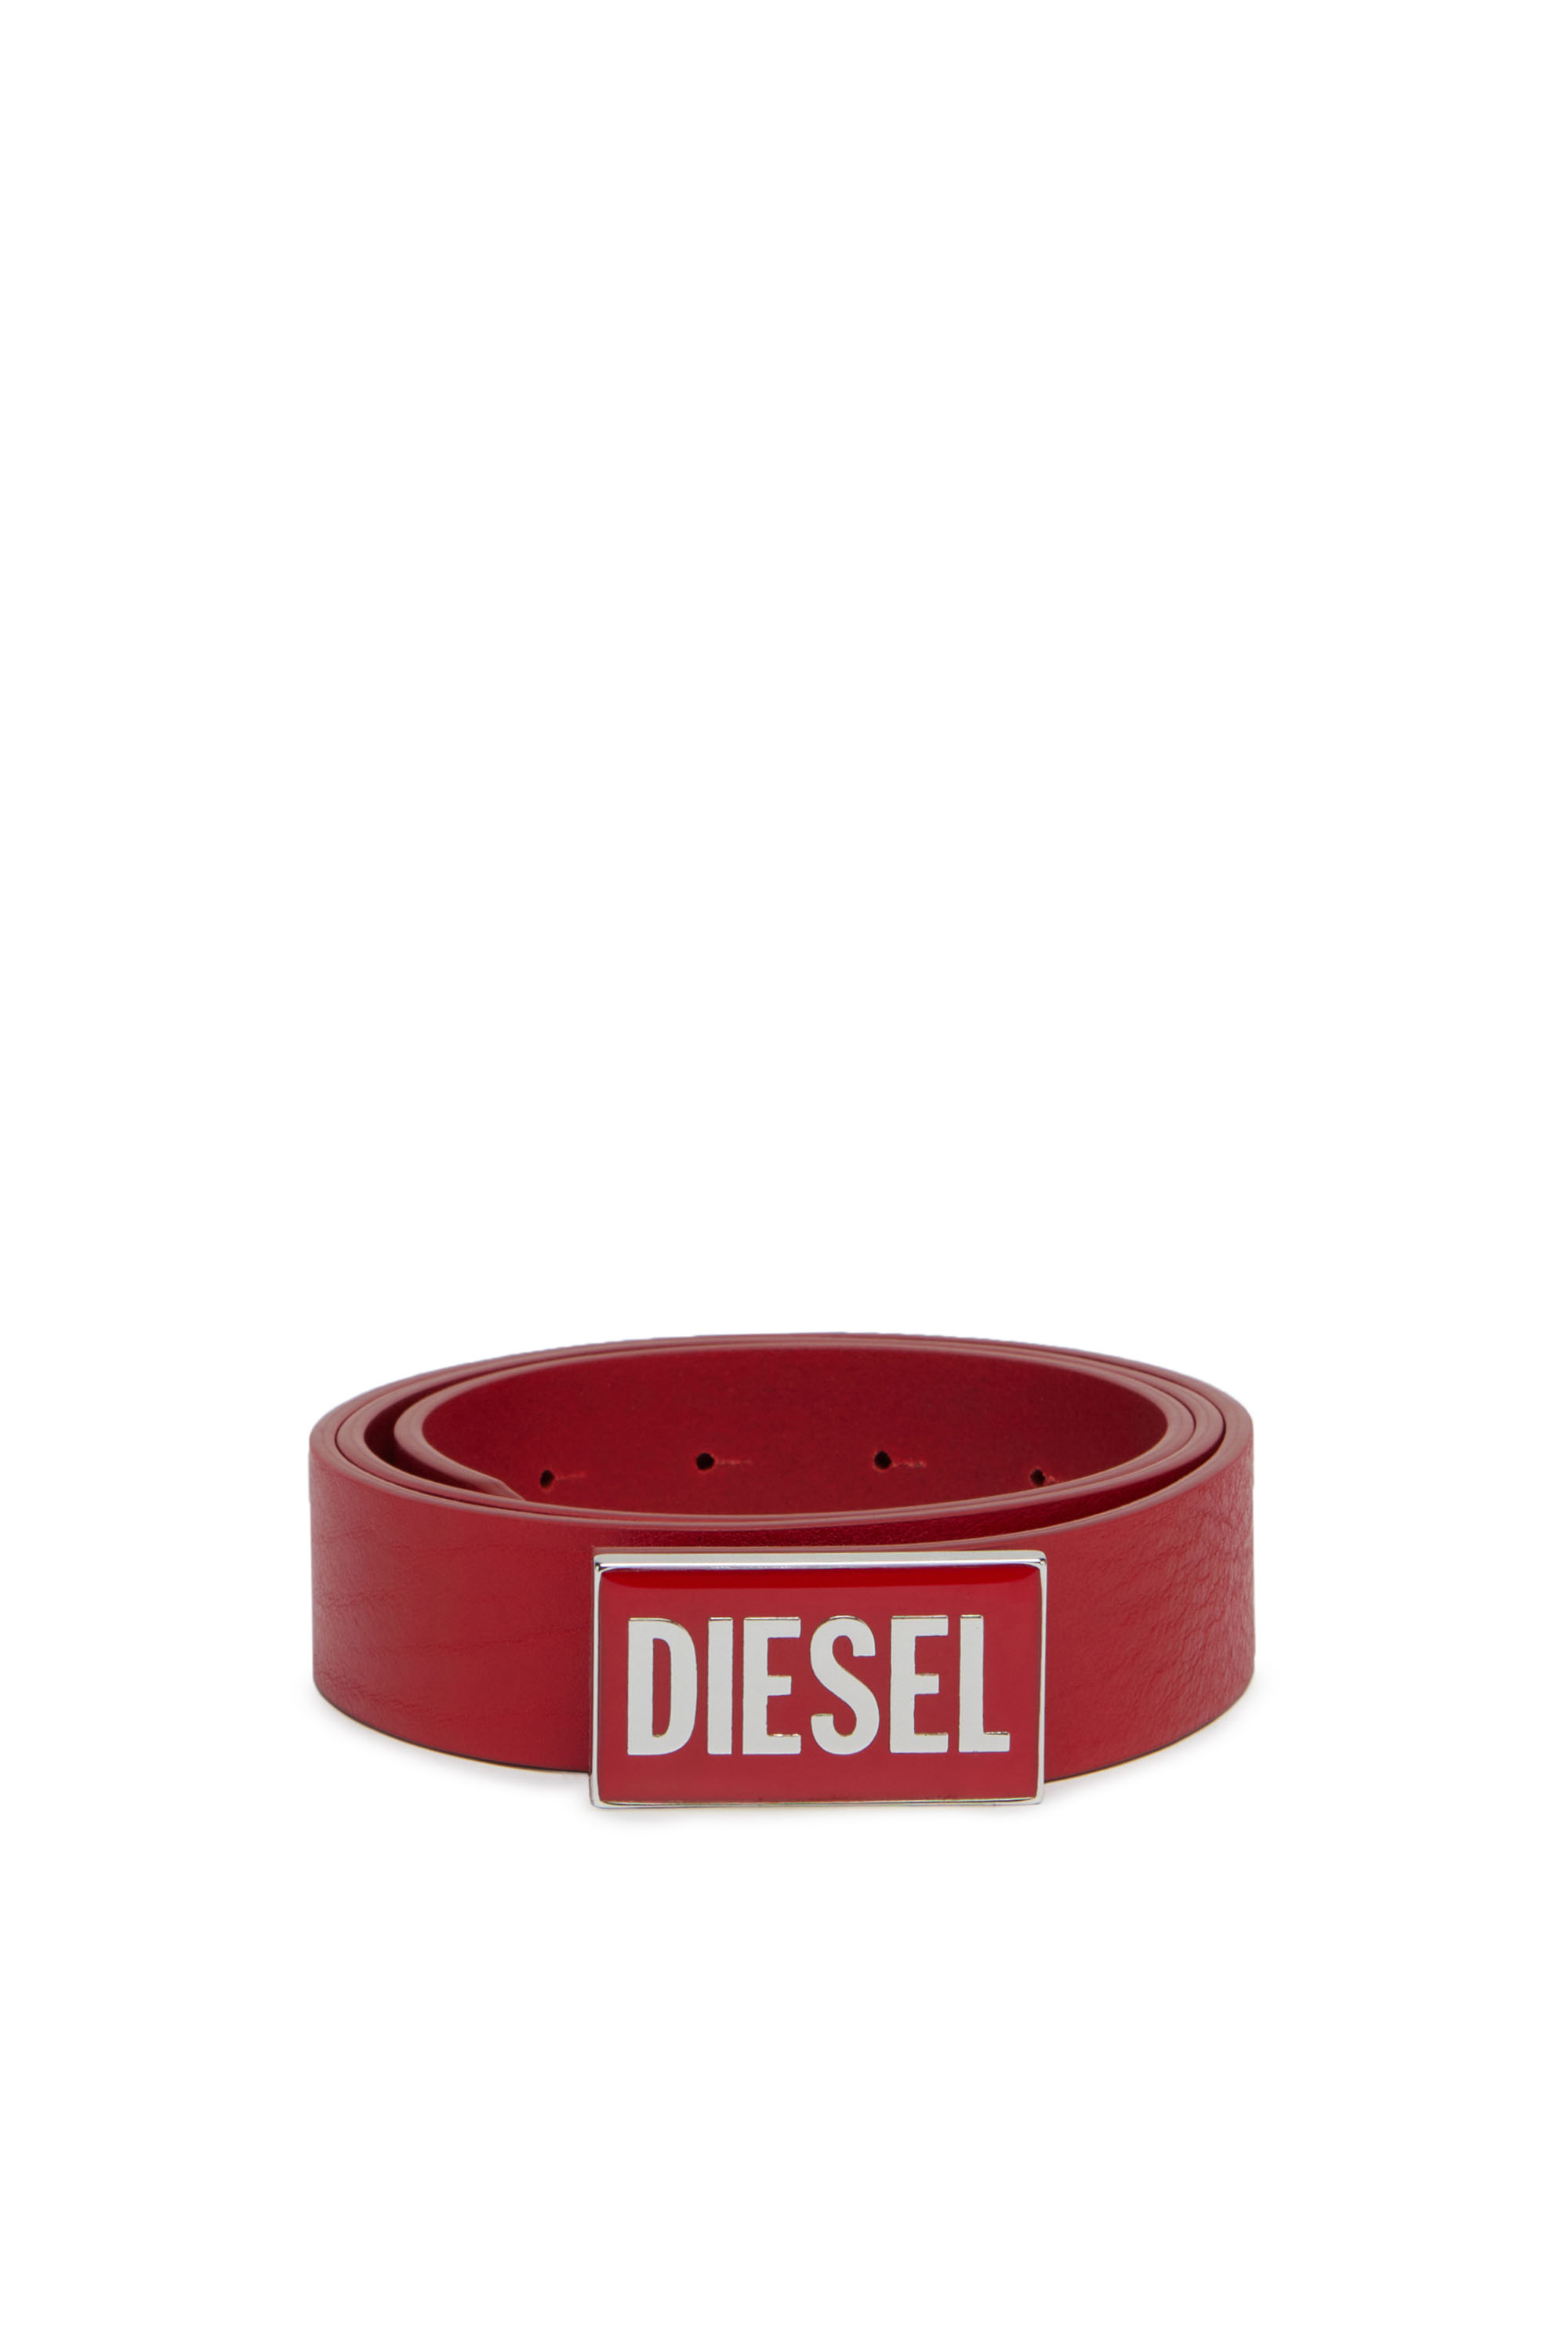 Diesel - B-GLOSSY, Red - Image 1